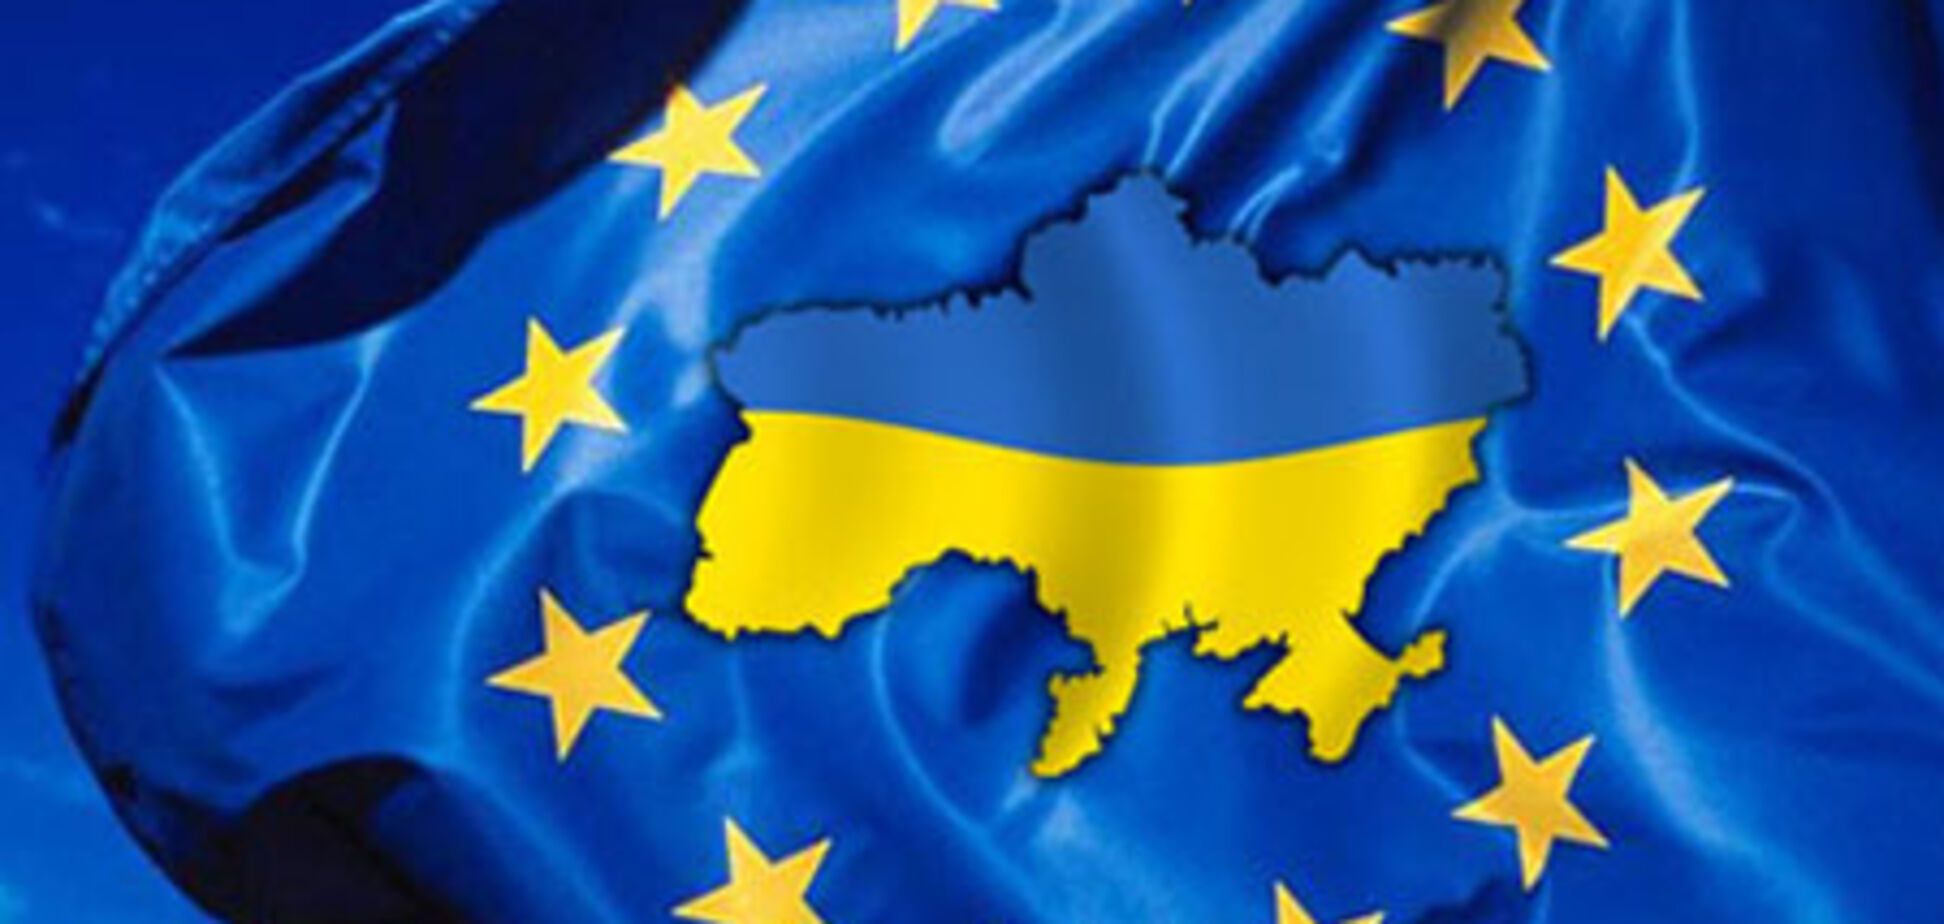 Экономика Украины подала позитивный сигнал - эксперты